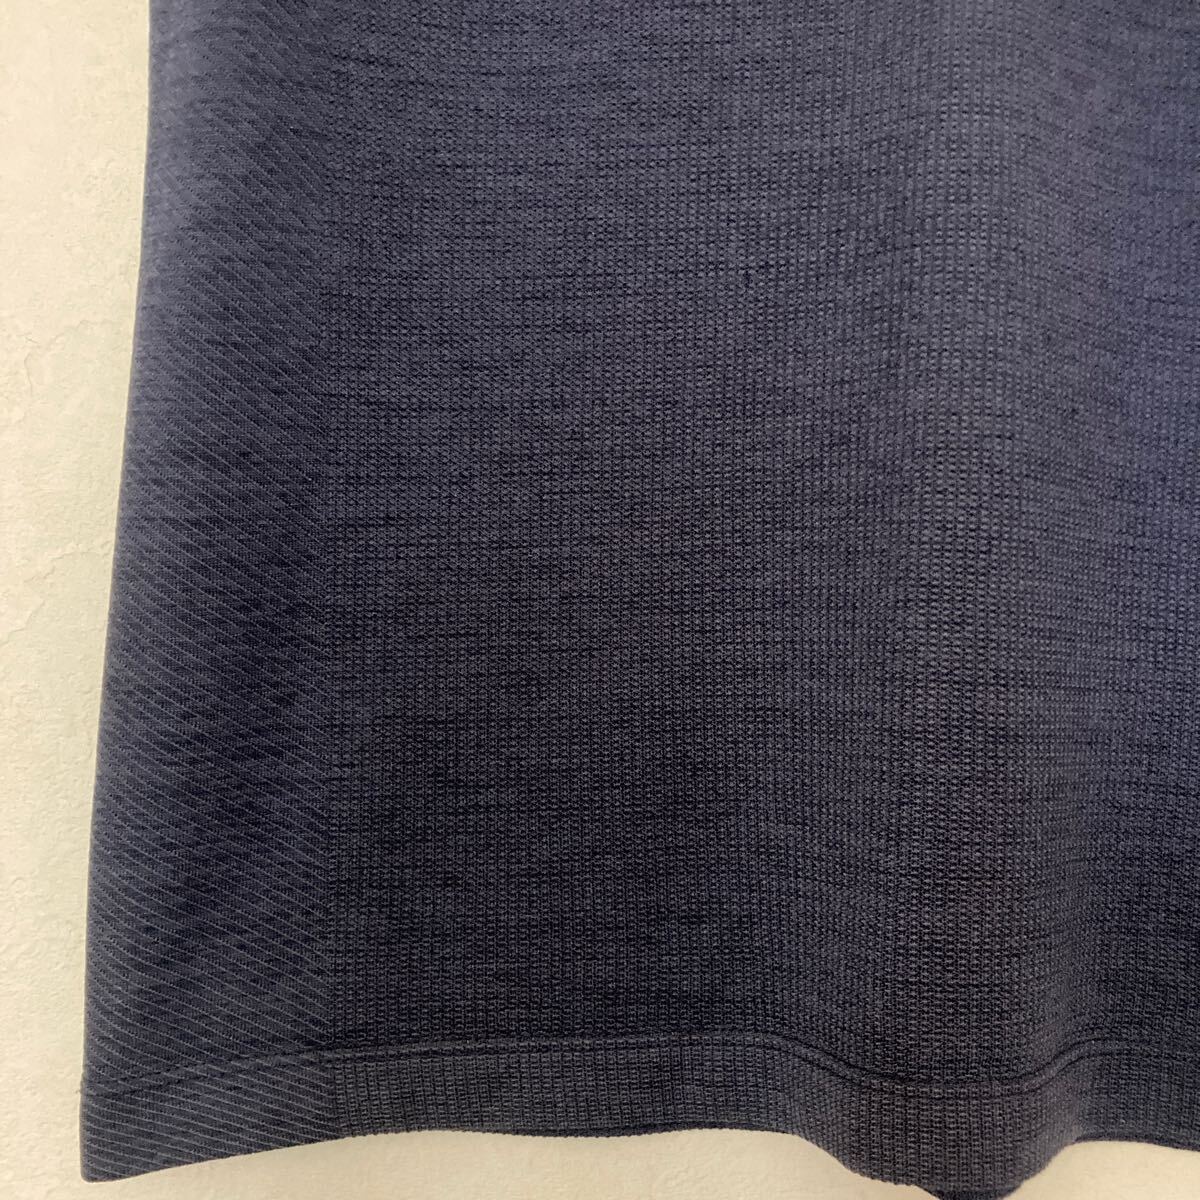 ユニクロ DRY-EX Tシャツ 半袖 メンズ S クルーネック 半袖Tシャツ 無地 UNIQLO ブルー ドライtシャツ シンプル